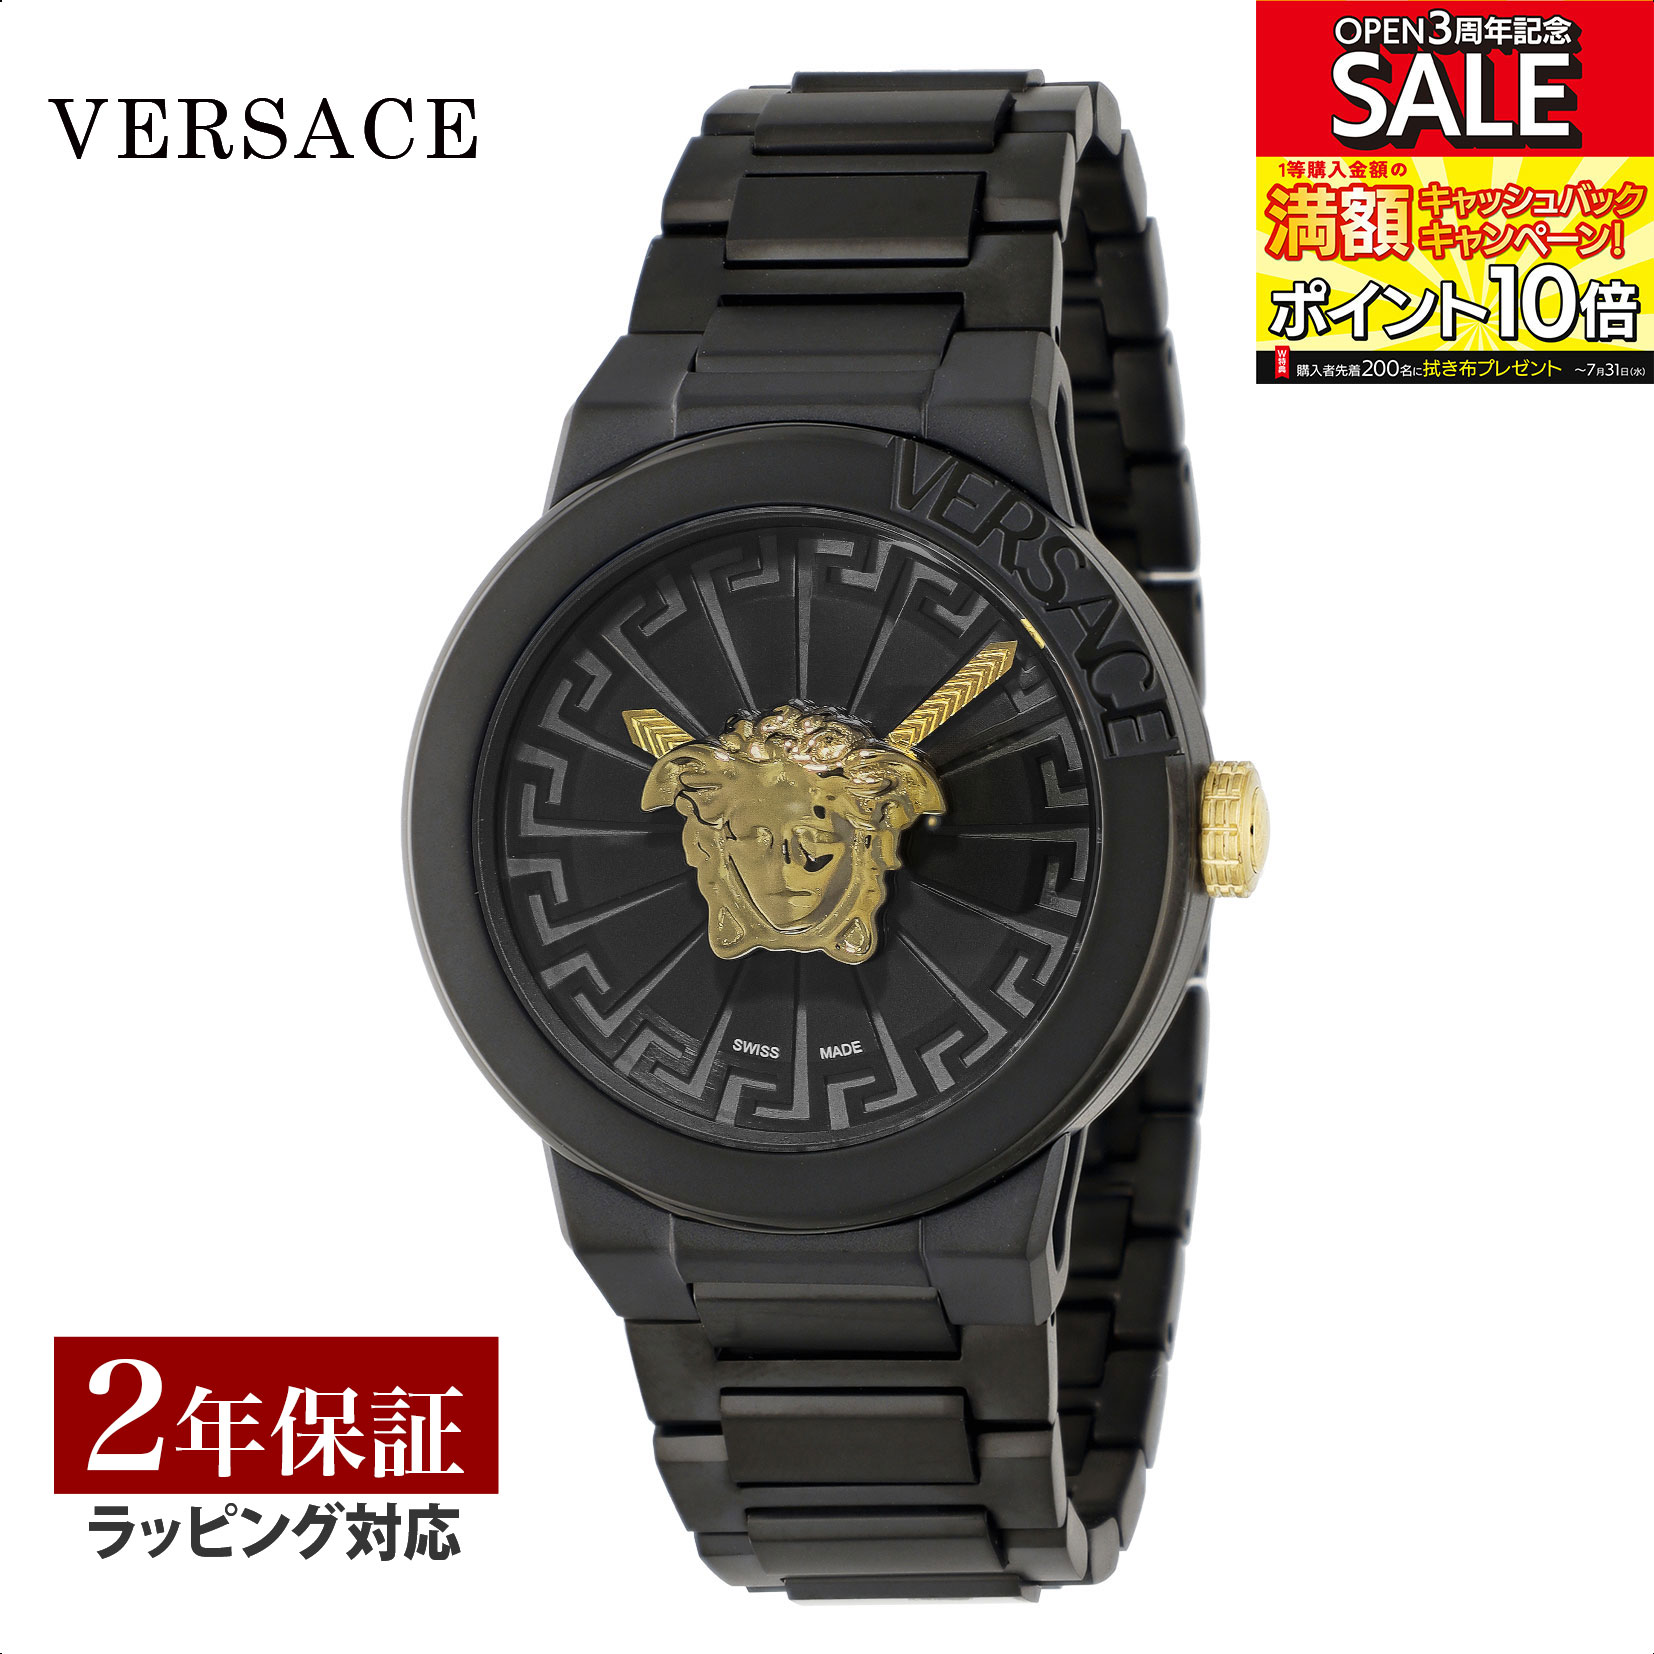 ヴェルサーチェ VERSACE メンズ 時計 メドゥーサ インフィニット Medusa Infinite クォーツ ブラック VE3F00622 腕時計 高級腕時計 ブランド